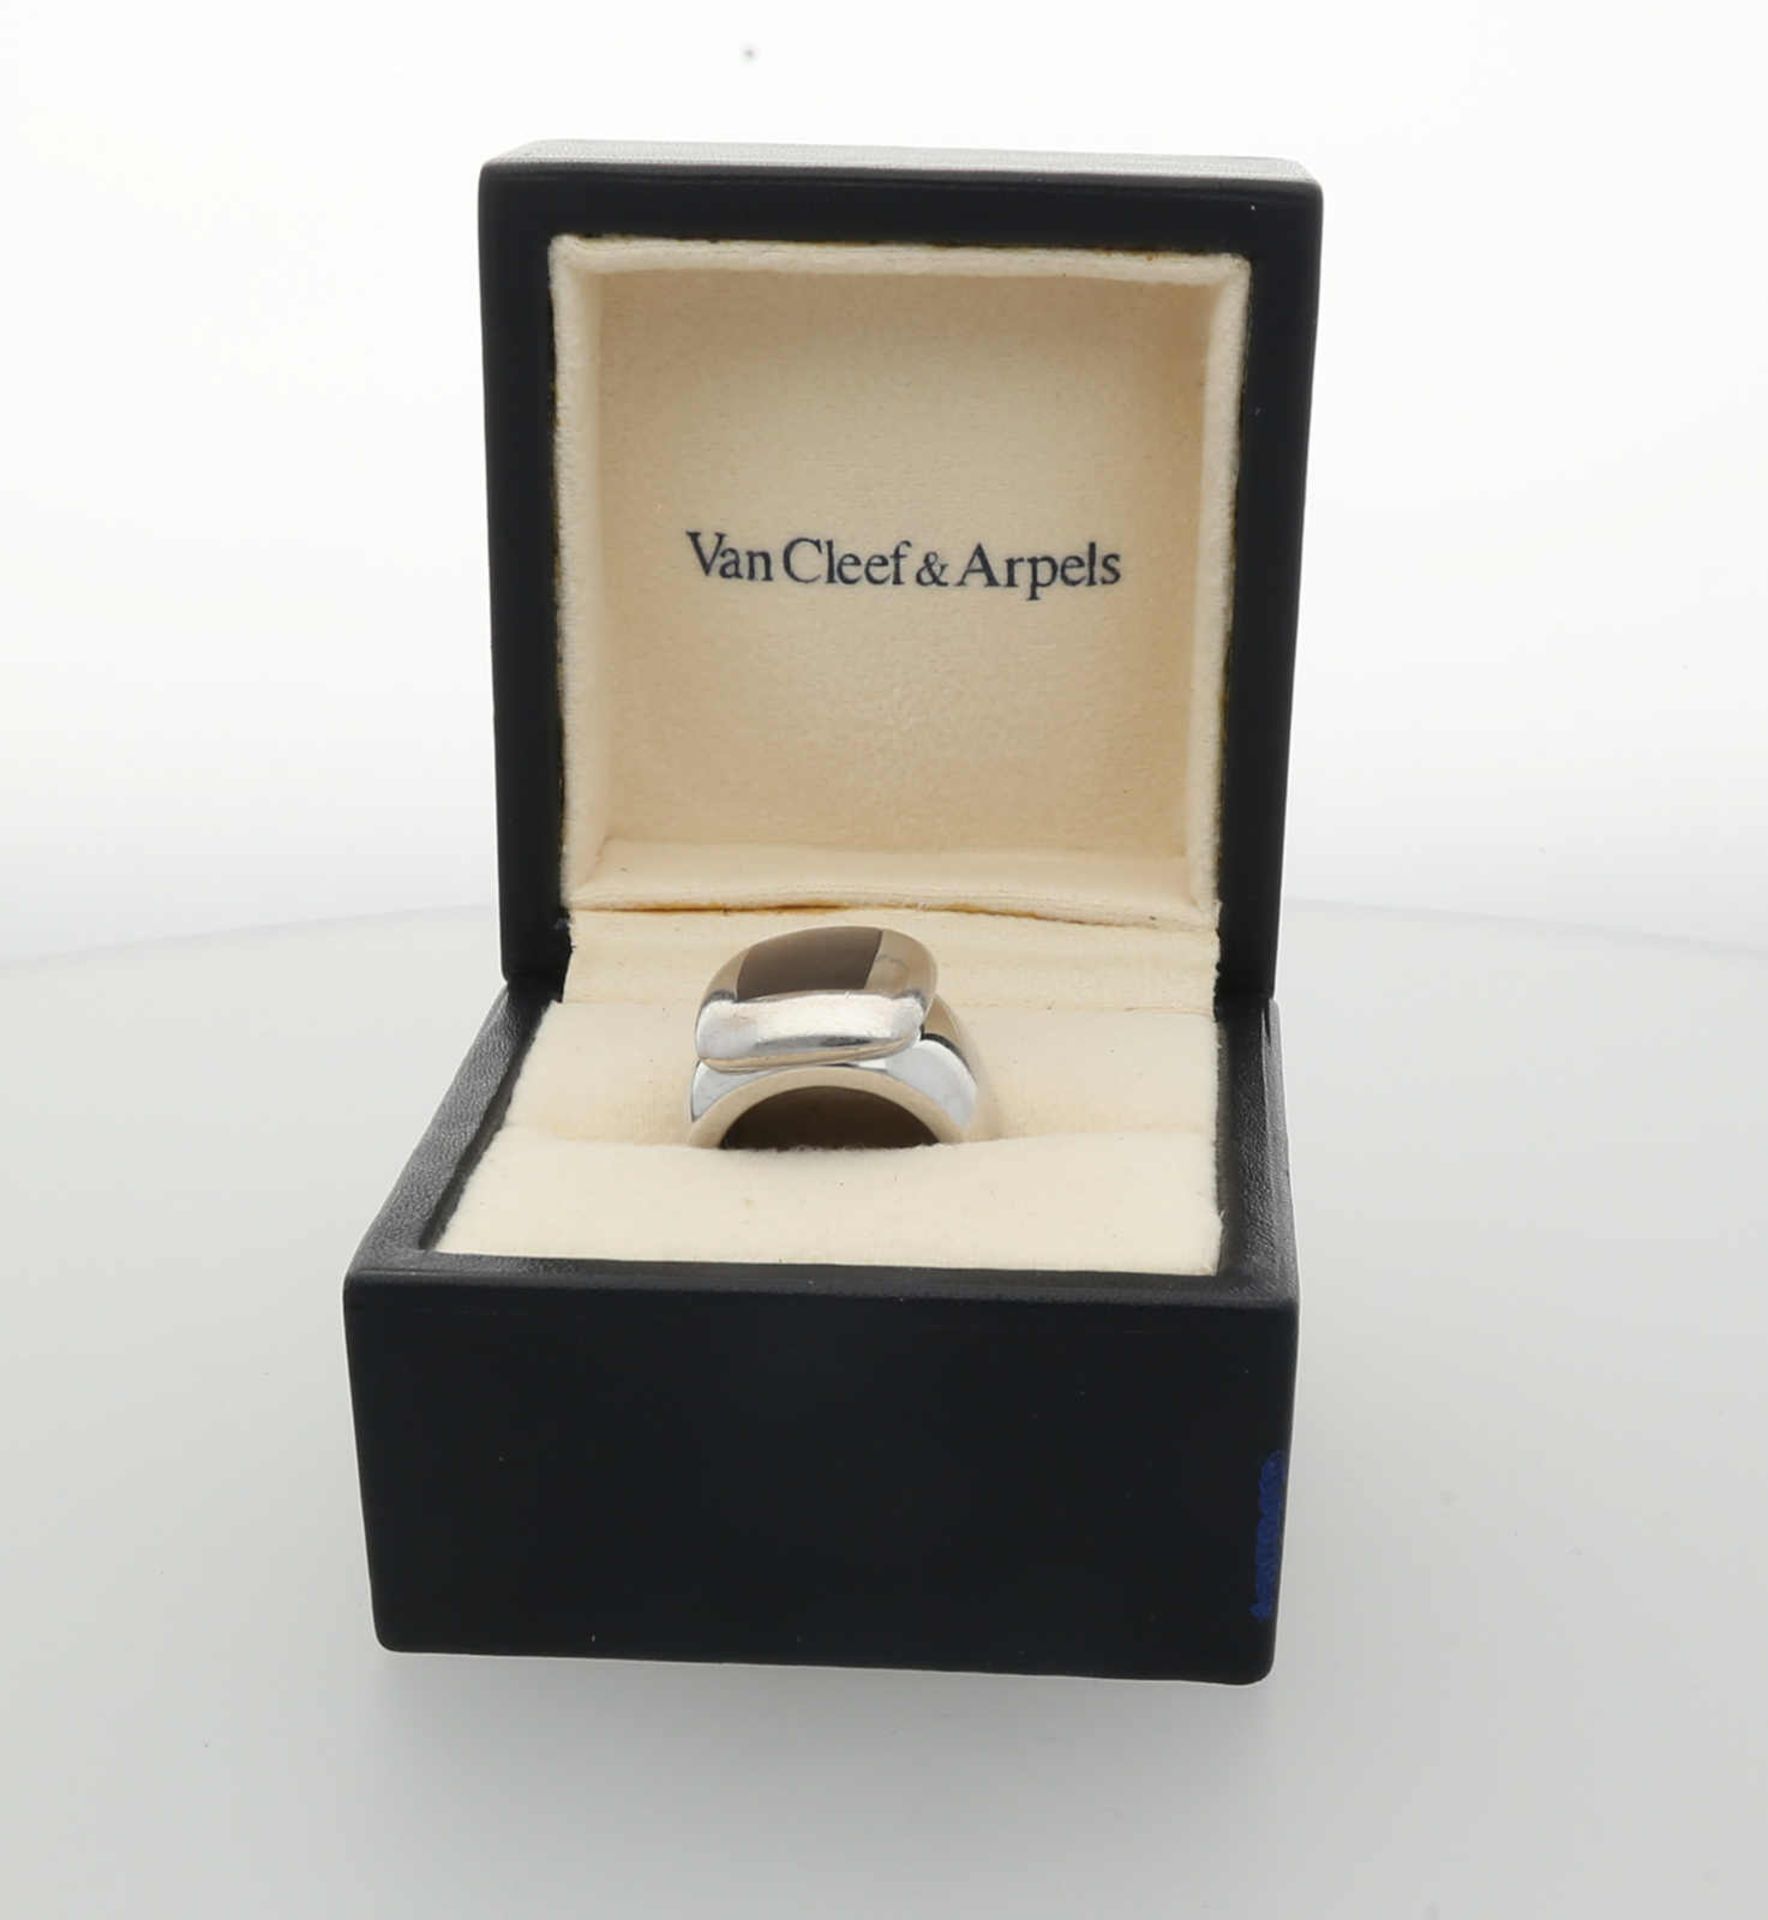 VAN CLEEF & ARPELS Ring Modell "Babylon" mit grauer Perlmutt-Einlage an polierter Ringschiene, - Image 3 of 3